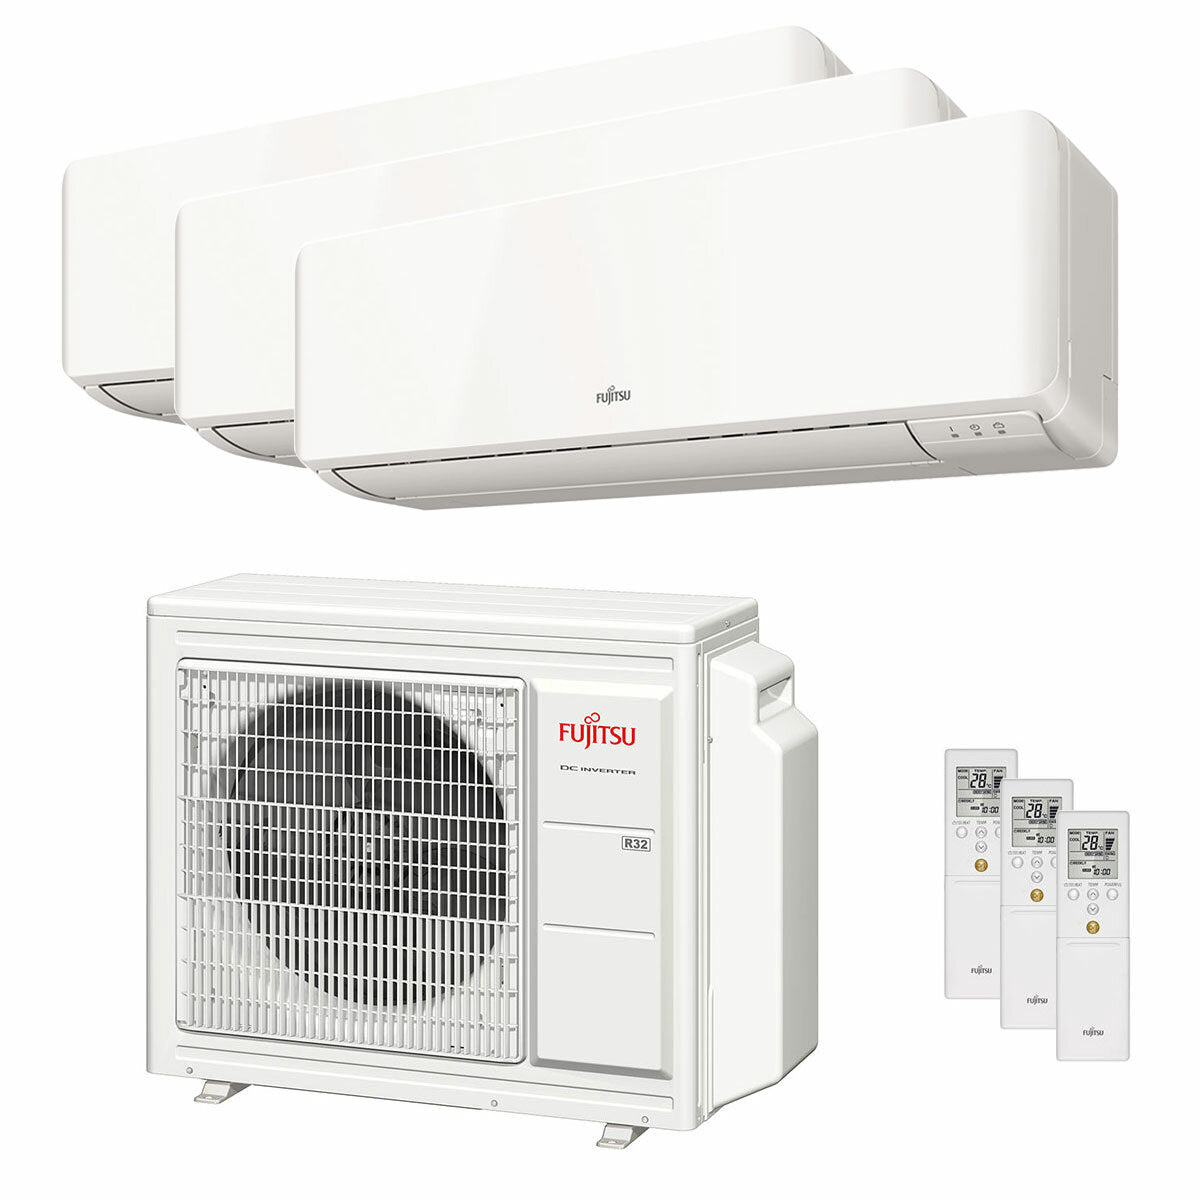 Fujitsu-Klimaanlage KM-Serie WiFi Trial Split 7000+7000+12000 BTU Wechselrichter A+++ Außeneinheit 5,4 kW